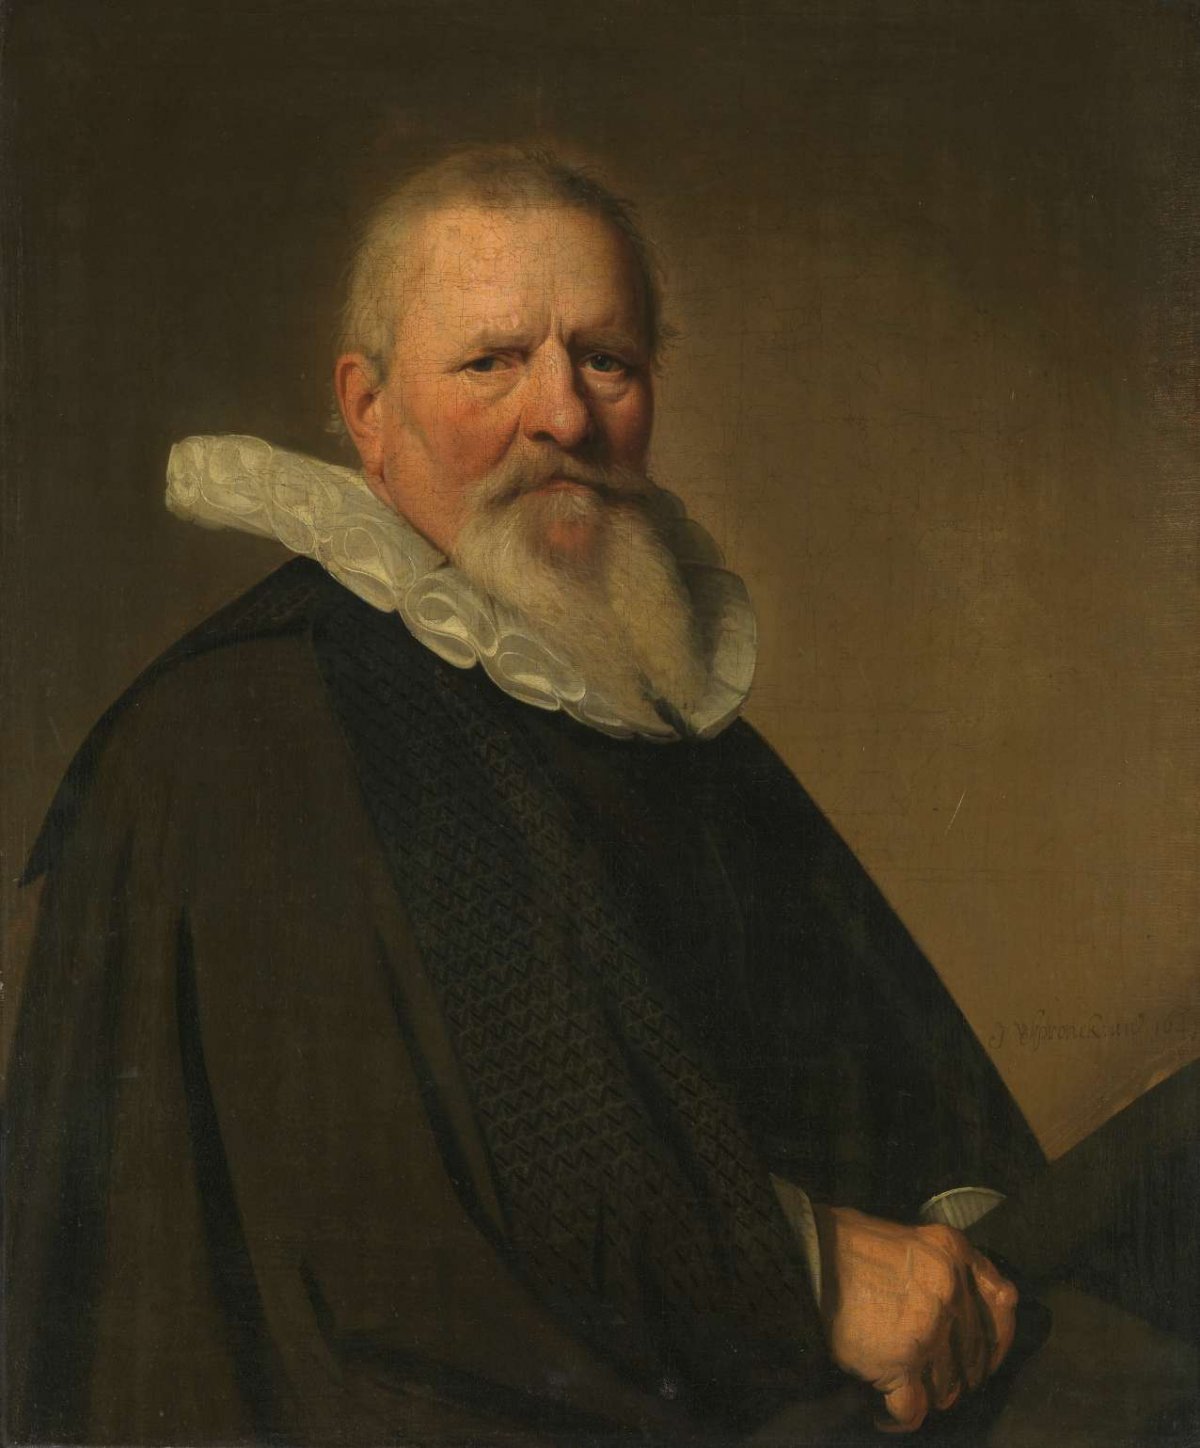 Pieter Jacobsz Schout (1570-1645), Burgomaster of Haarlem, Johannes Cornelisz. Verspronck, 1641